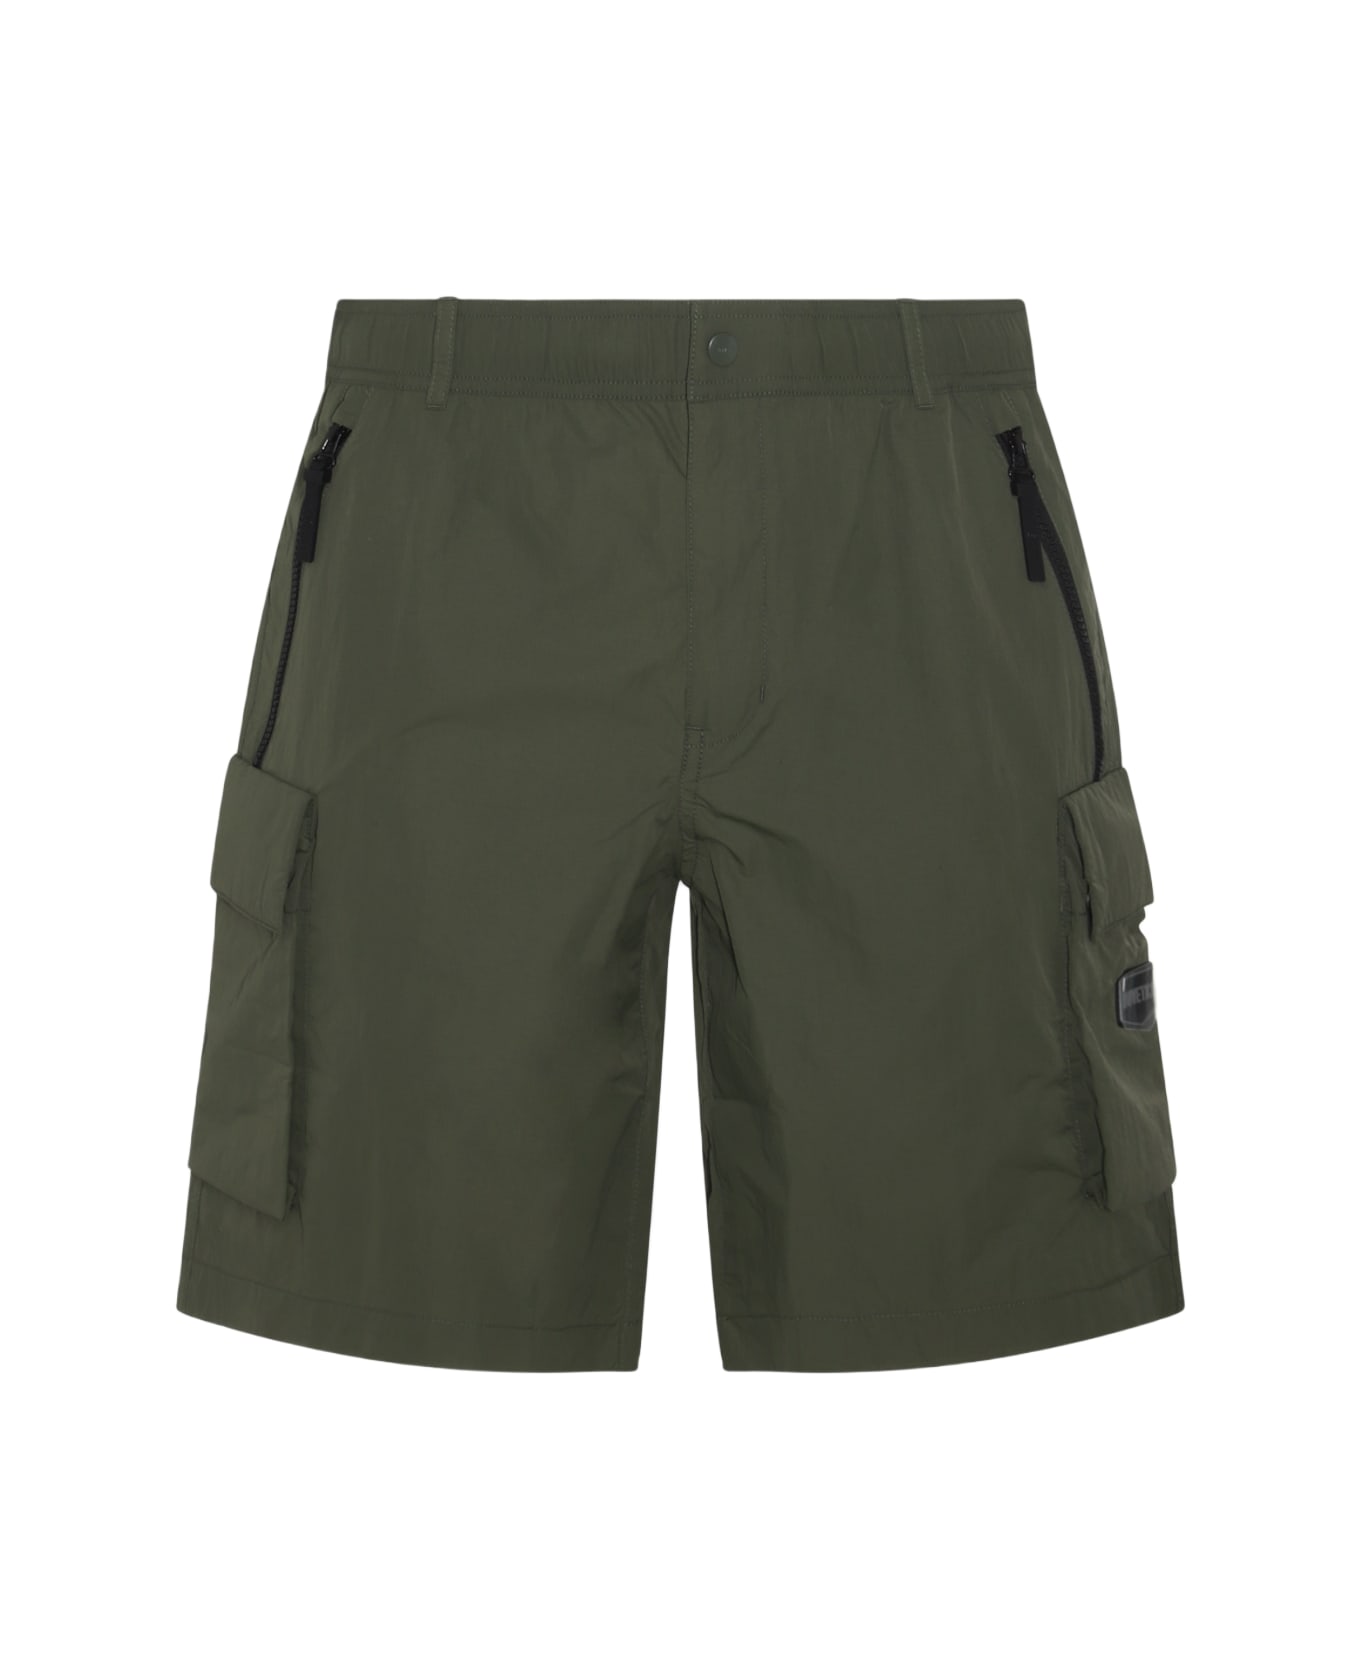 Duvetica Military Green Shorts - Military ショートパンツ